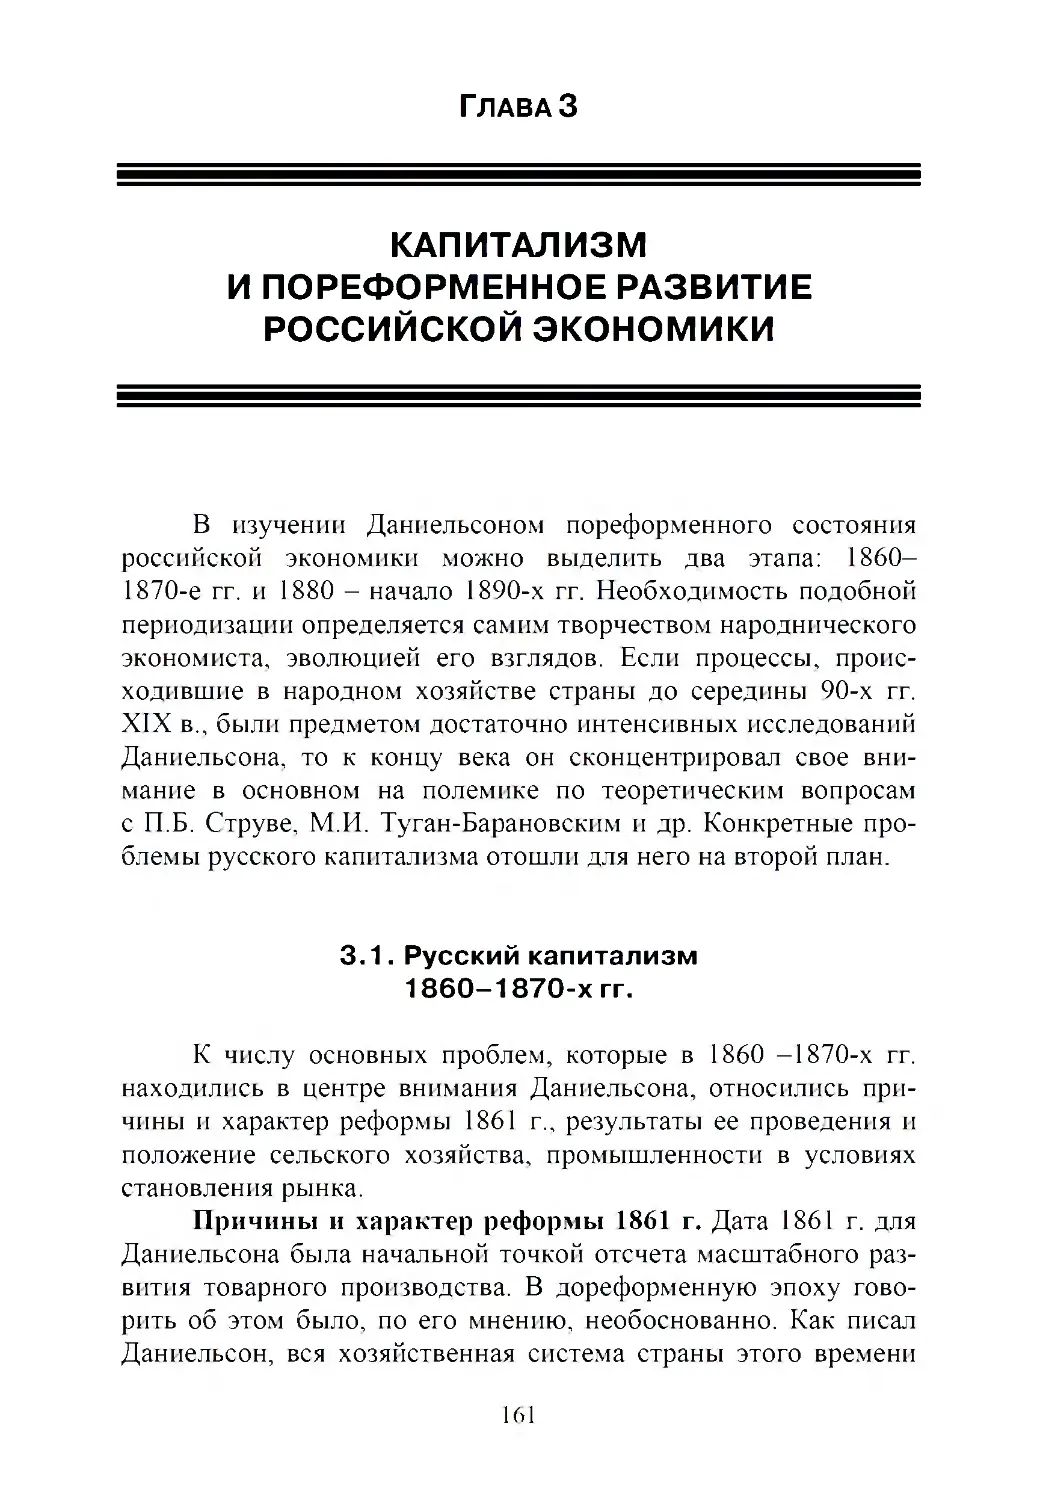 Глава 3. Капитализм и пореформенное развитие российской экономики